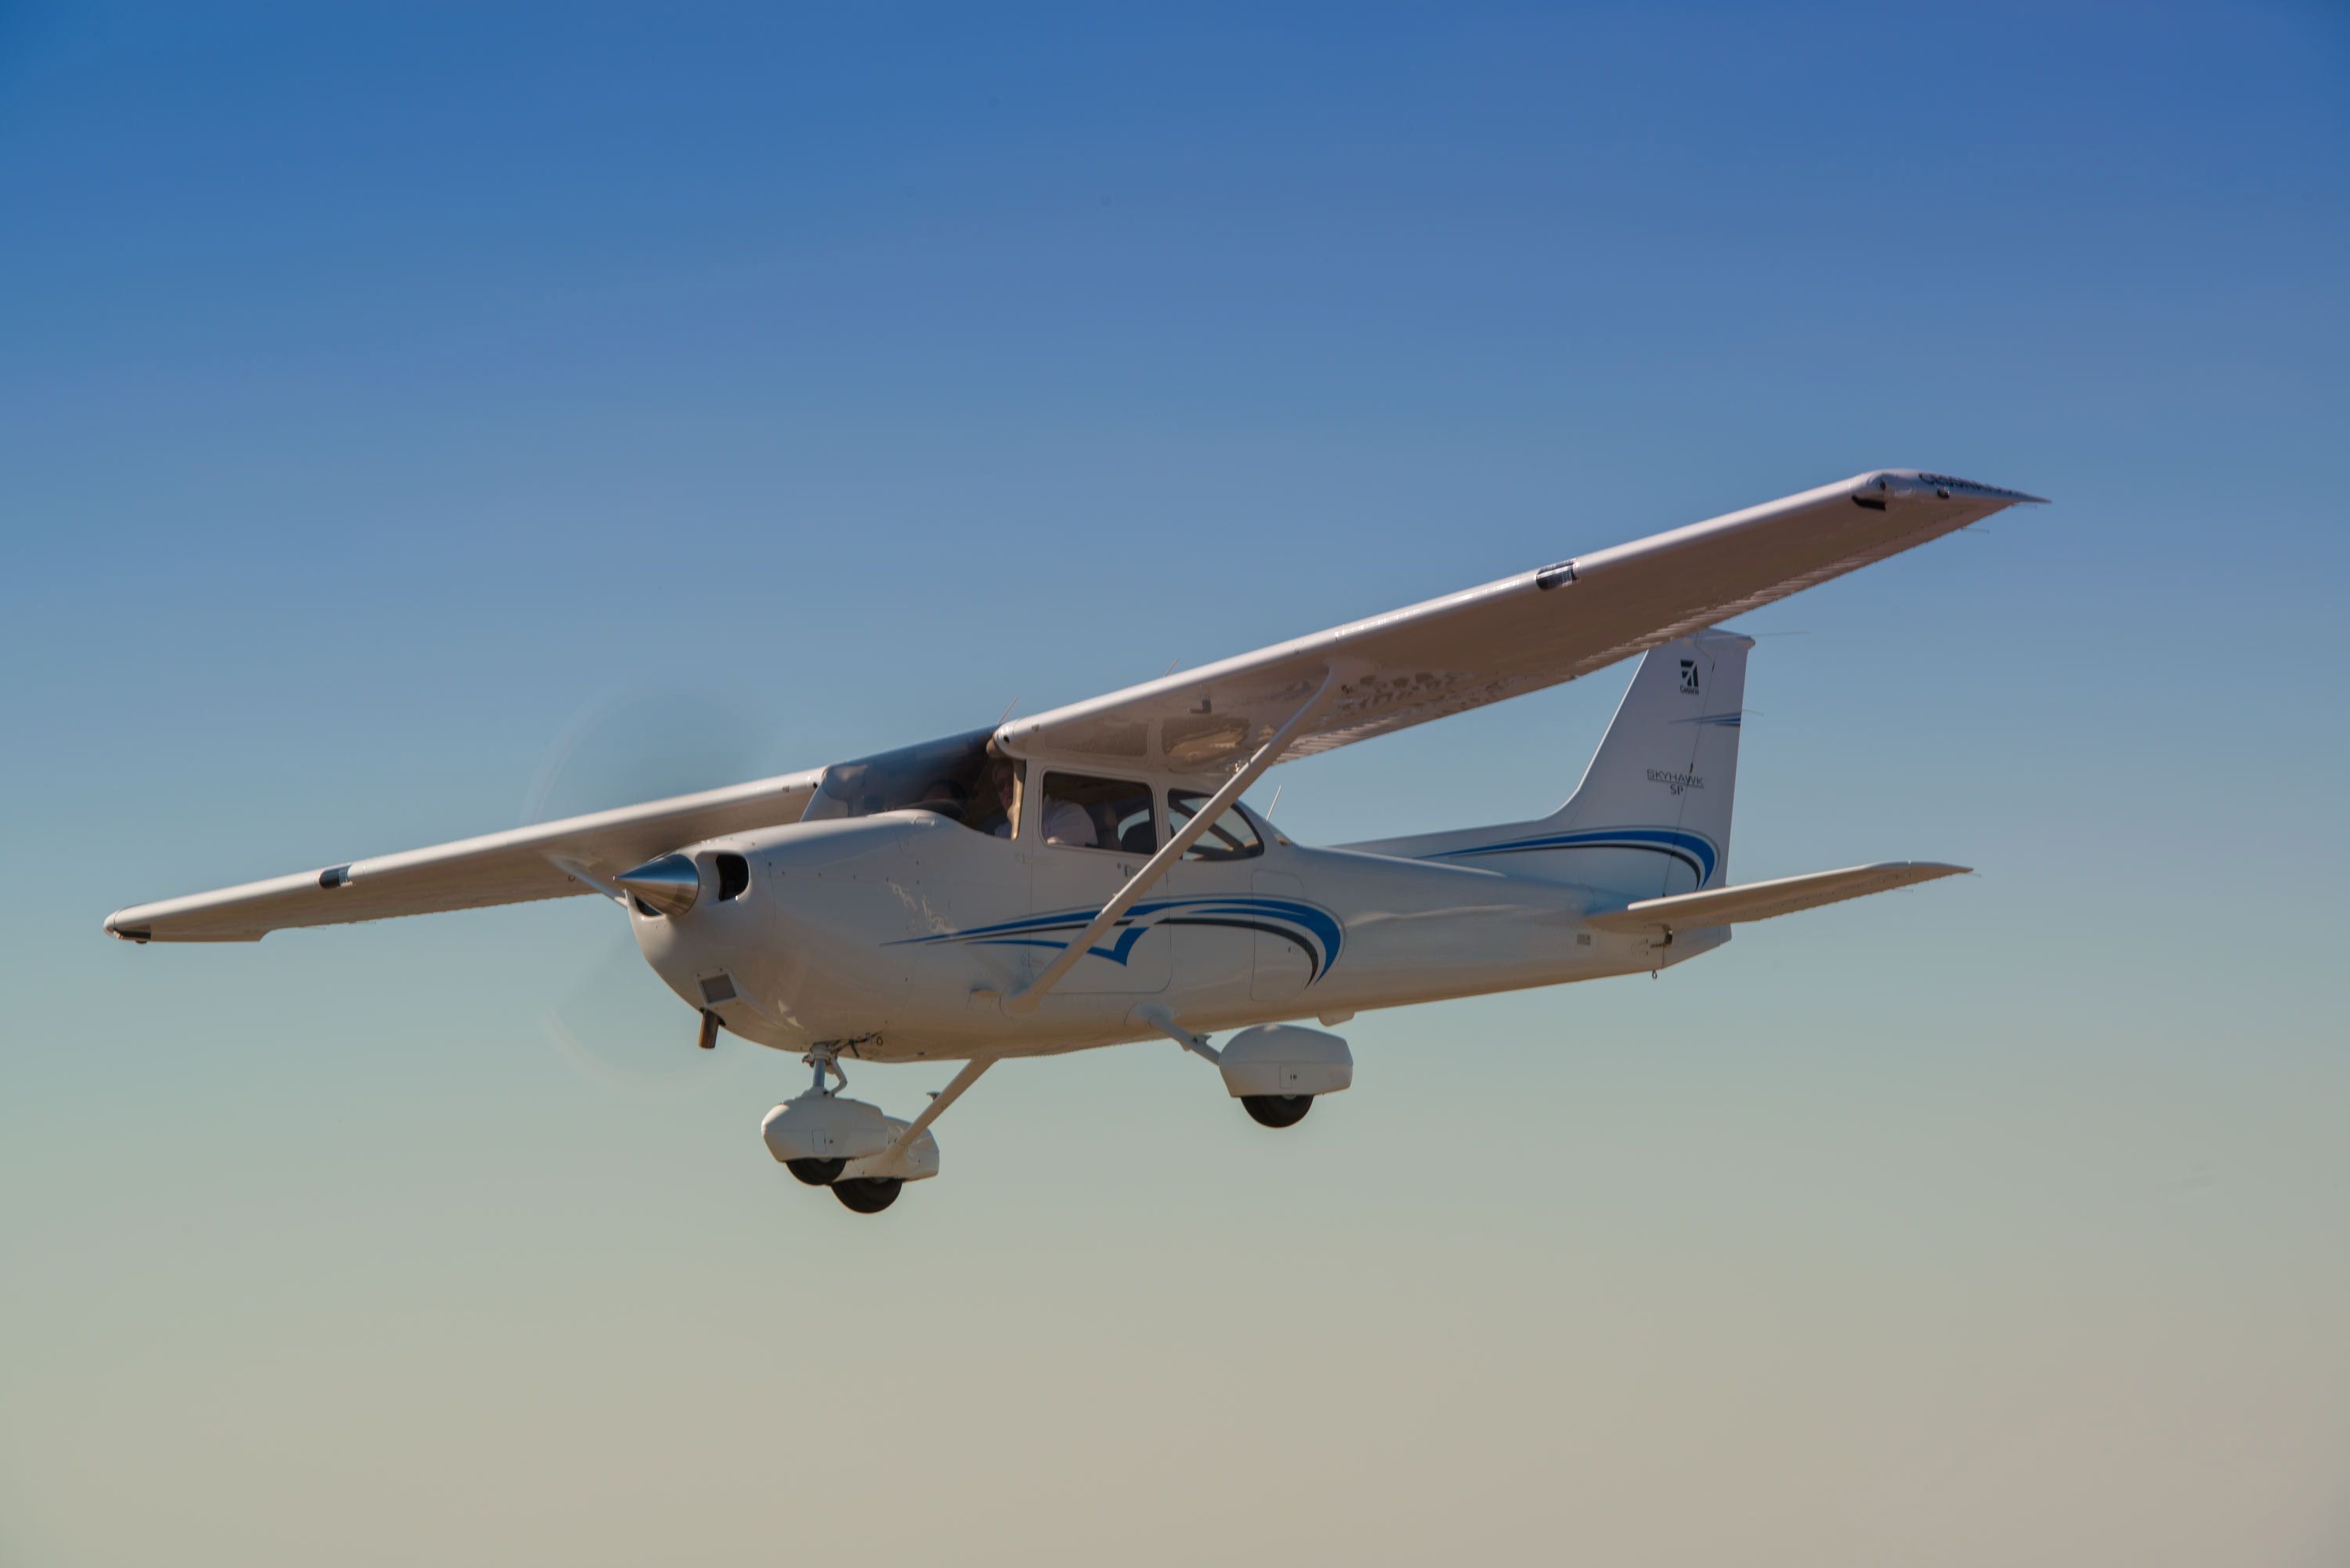 A Cessna 172S Skyhawk flying in the sky.